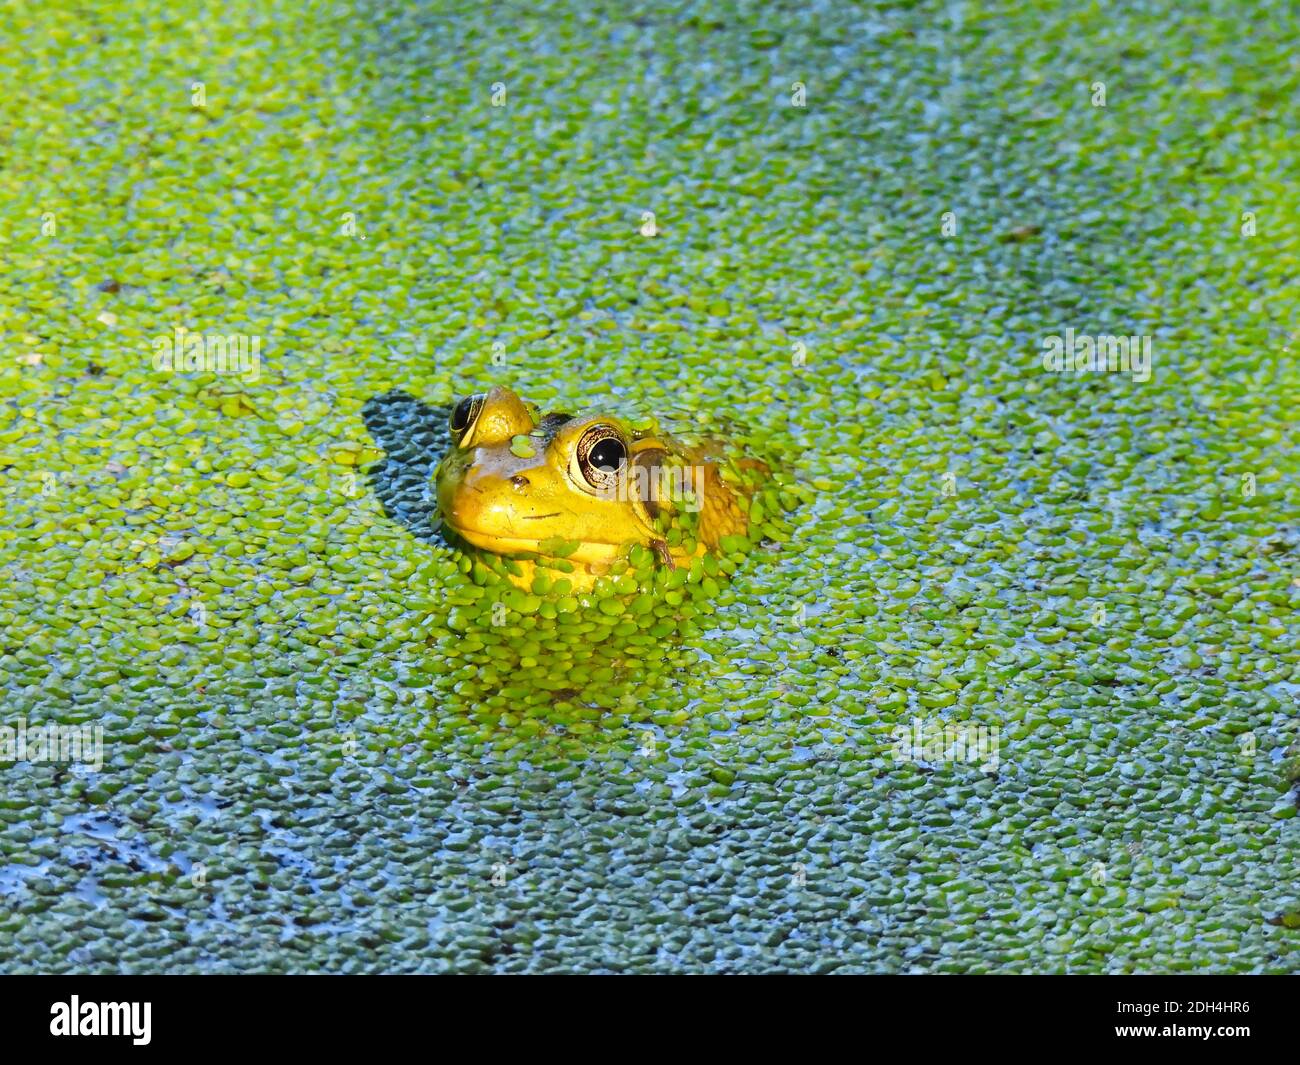 Ein junger Bullfrog freut sich, während Sun weiterscheint Kopf als Körper ist in Duckweed bedeckt Teich Wasser eingetaucht Stockfoto